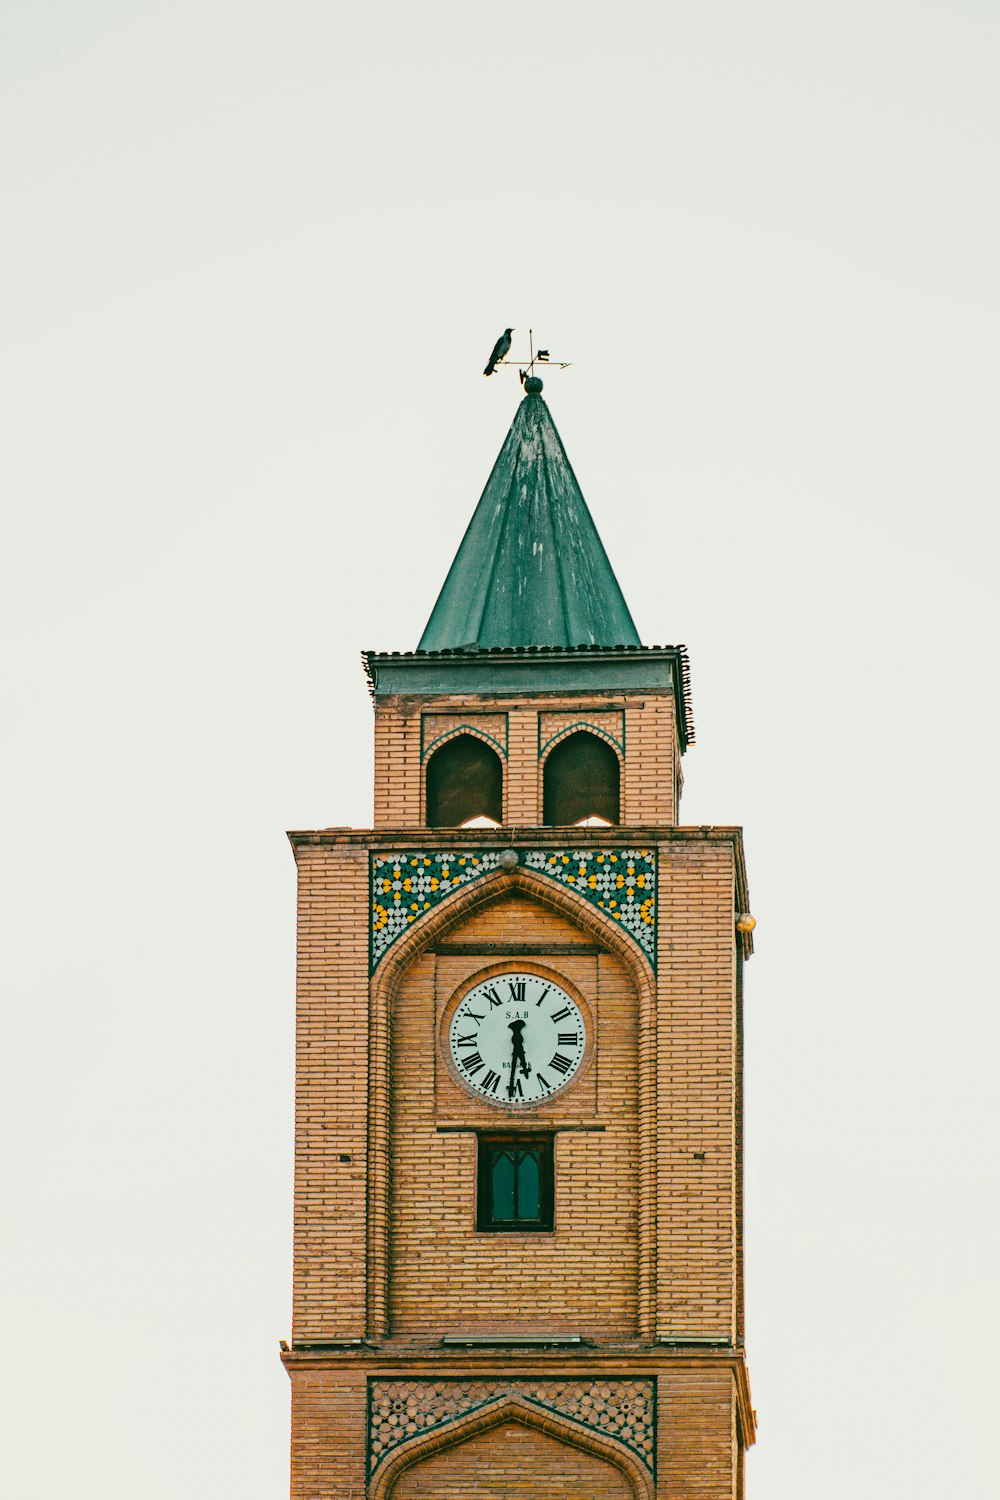 Un orologio su una torre